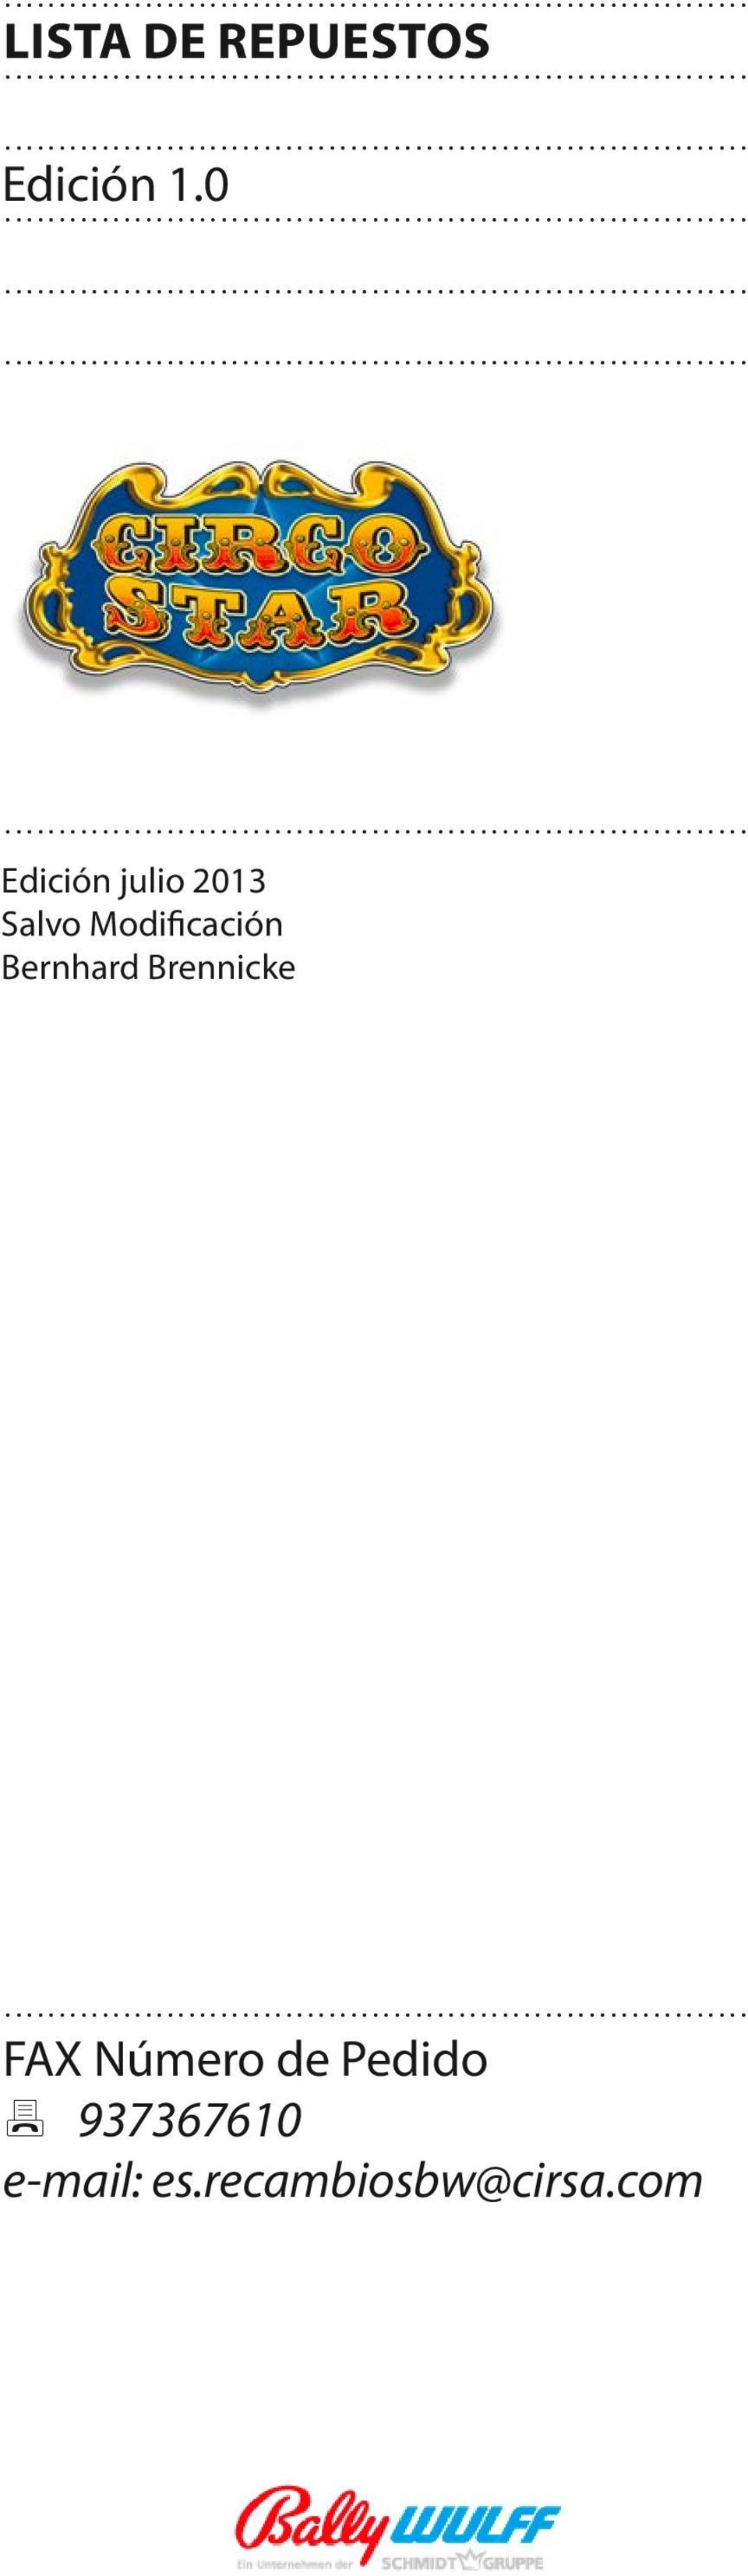 Modificación Bernhard Brennicke.